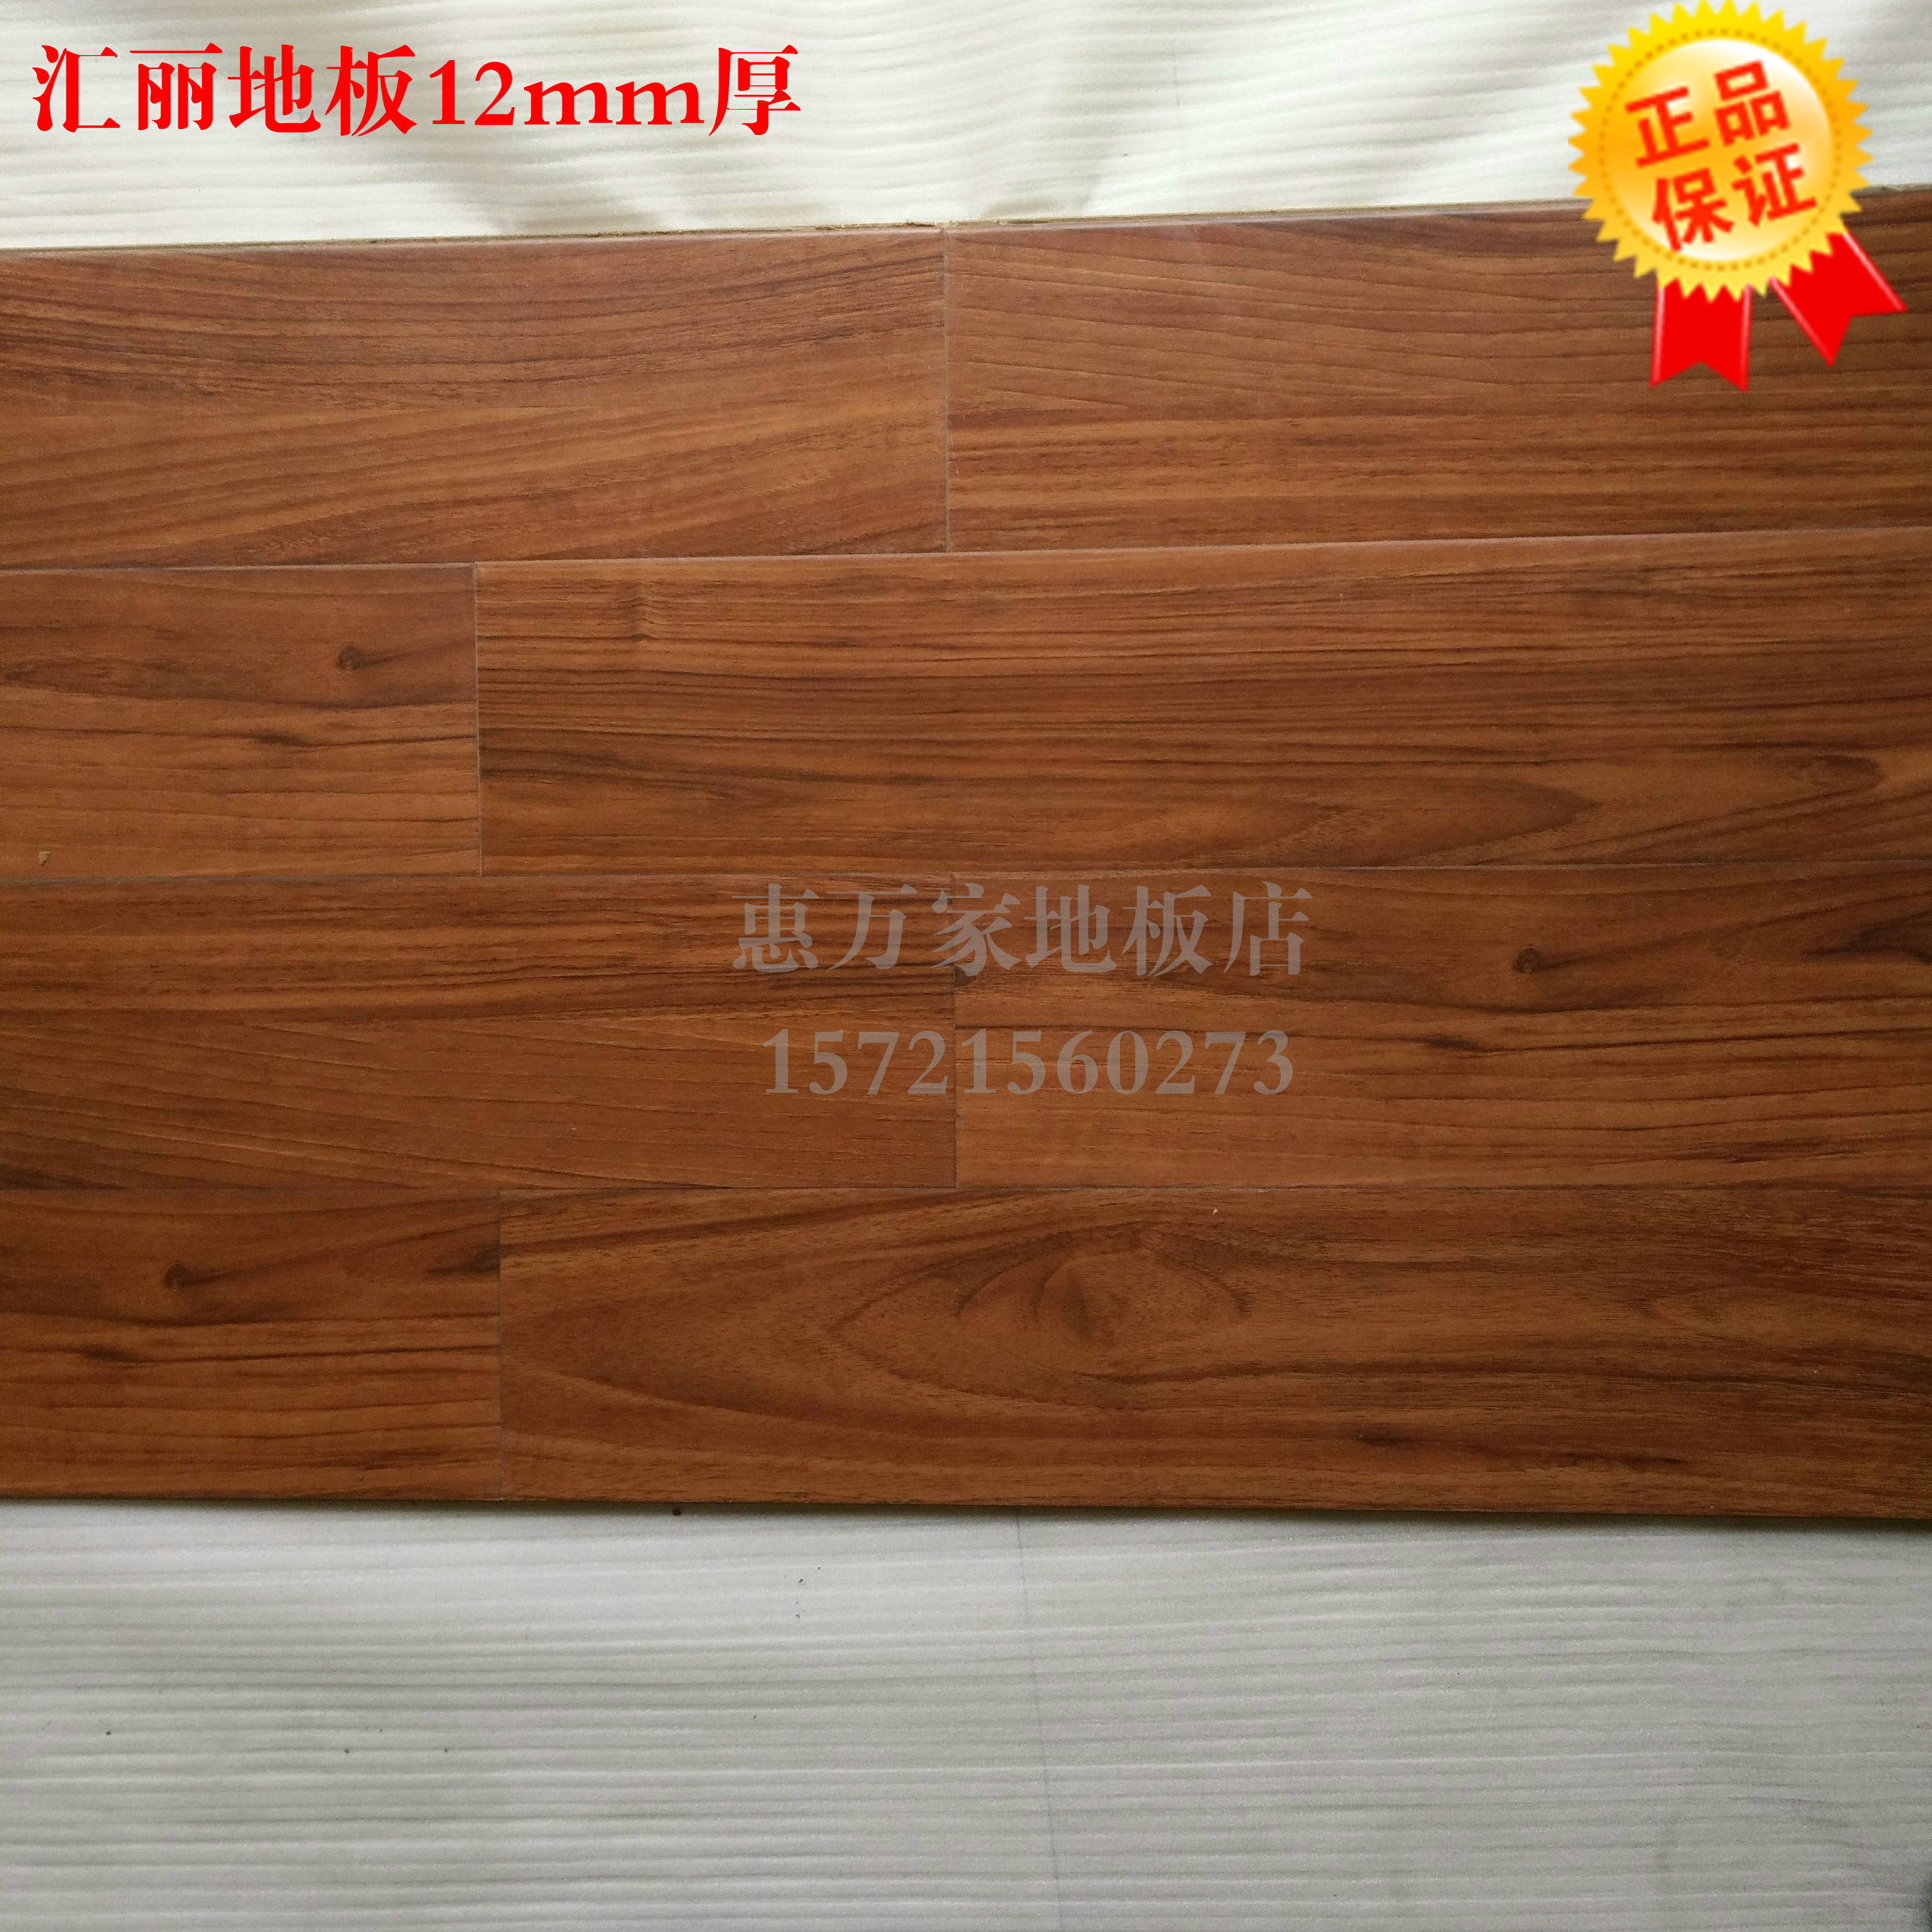 二手木地板/旧地板/品牌汇丽地板12mm厚强化复合柚木色9.9成新